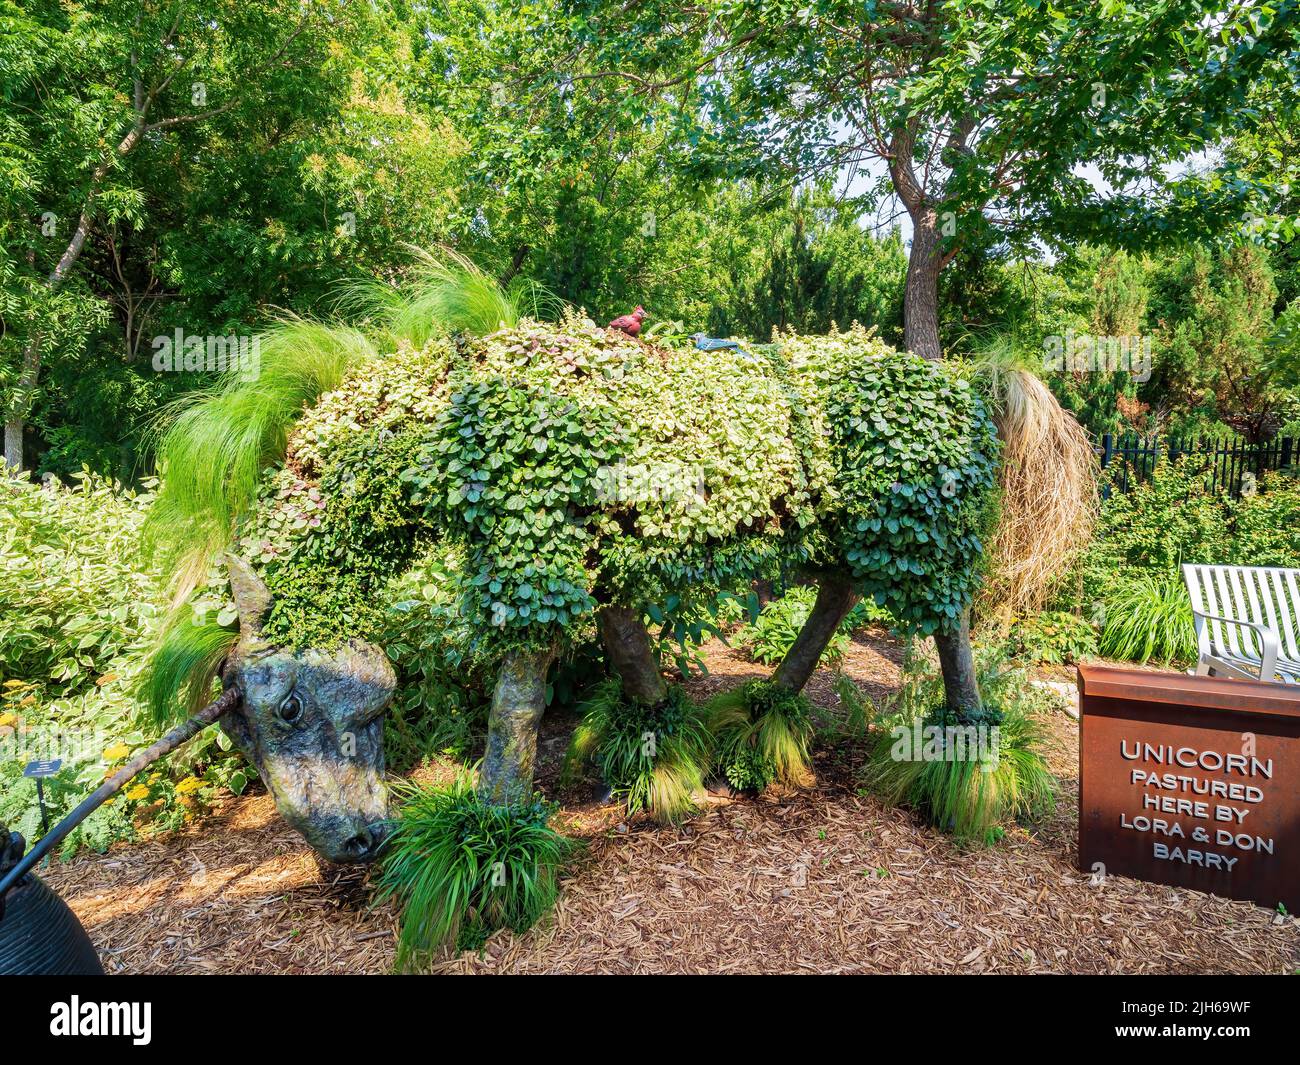 Kansas, JUL 1 2022 - Unicorn statue in Botanica, The Wichita Gardens Stock Photo